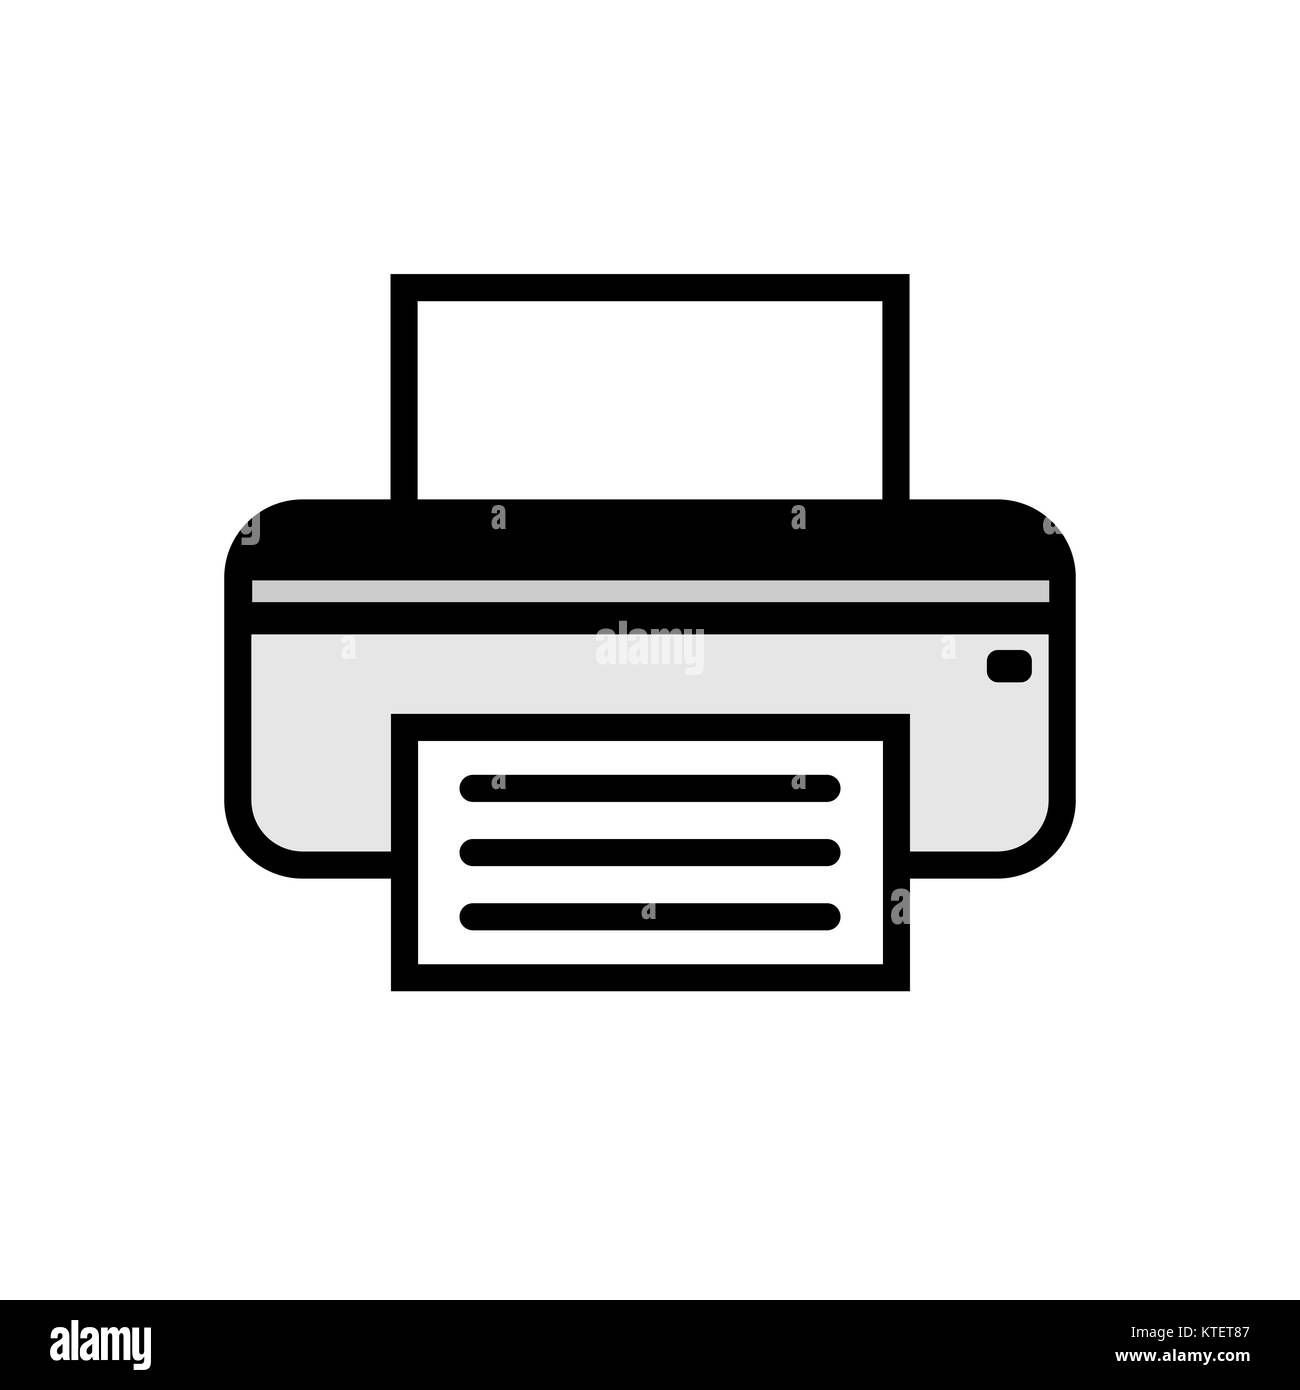 Printer fax icon Stock Vector